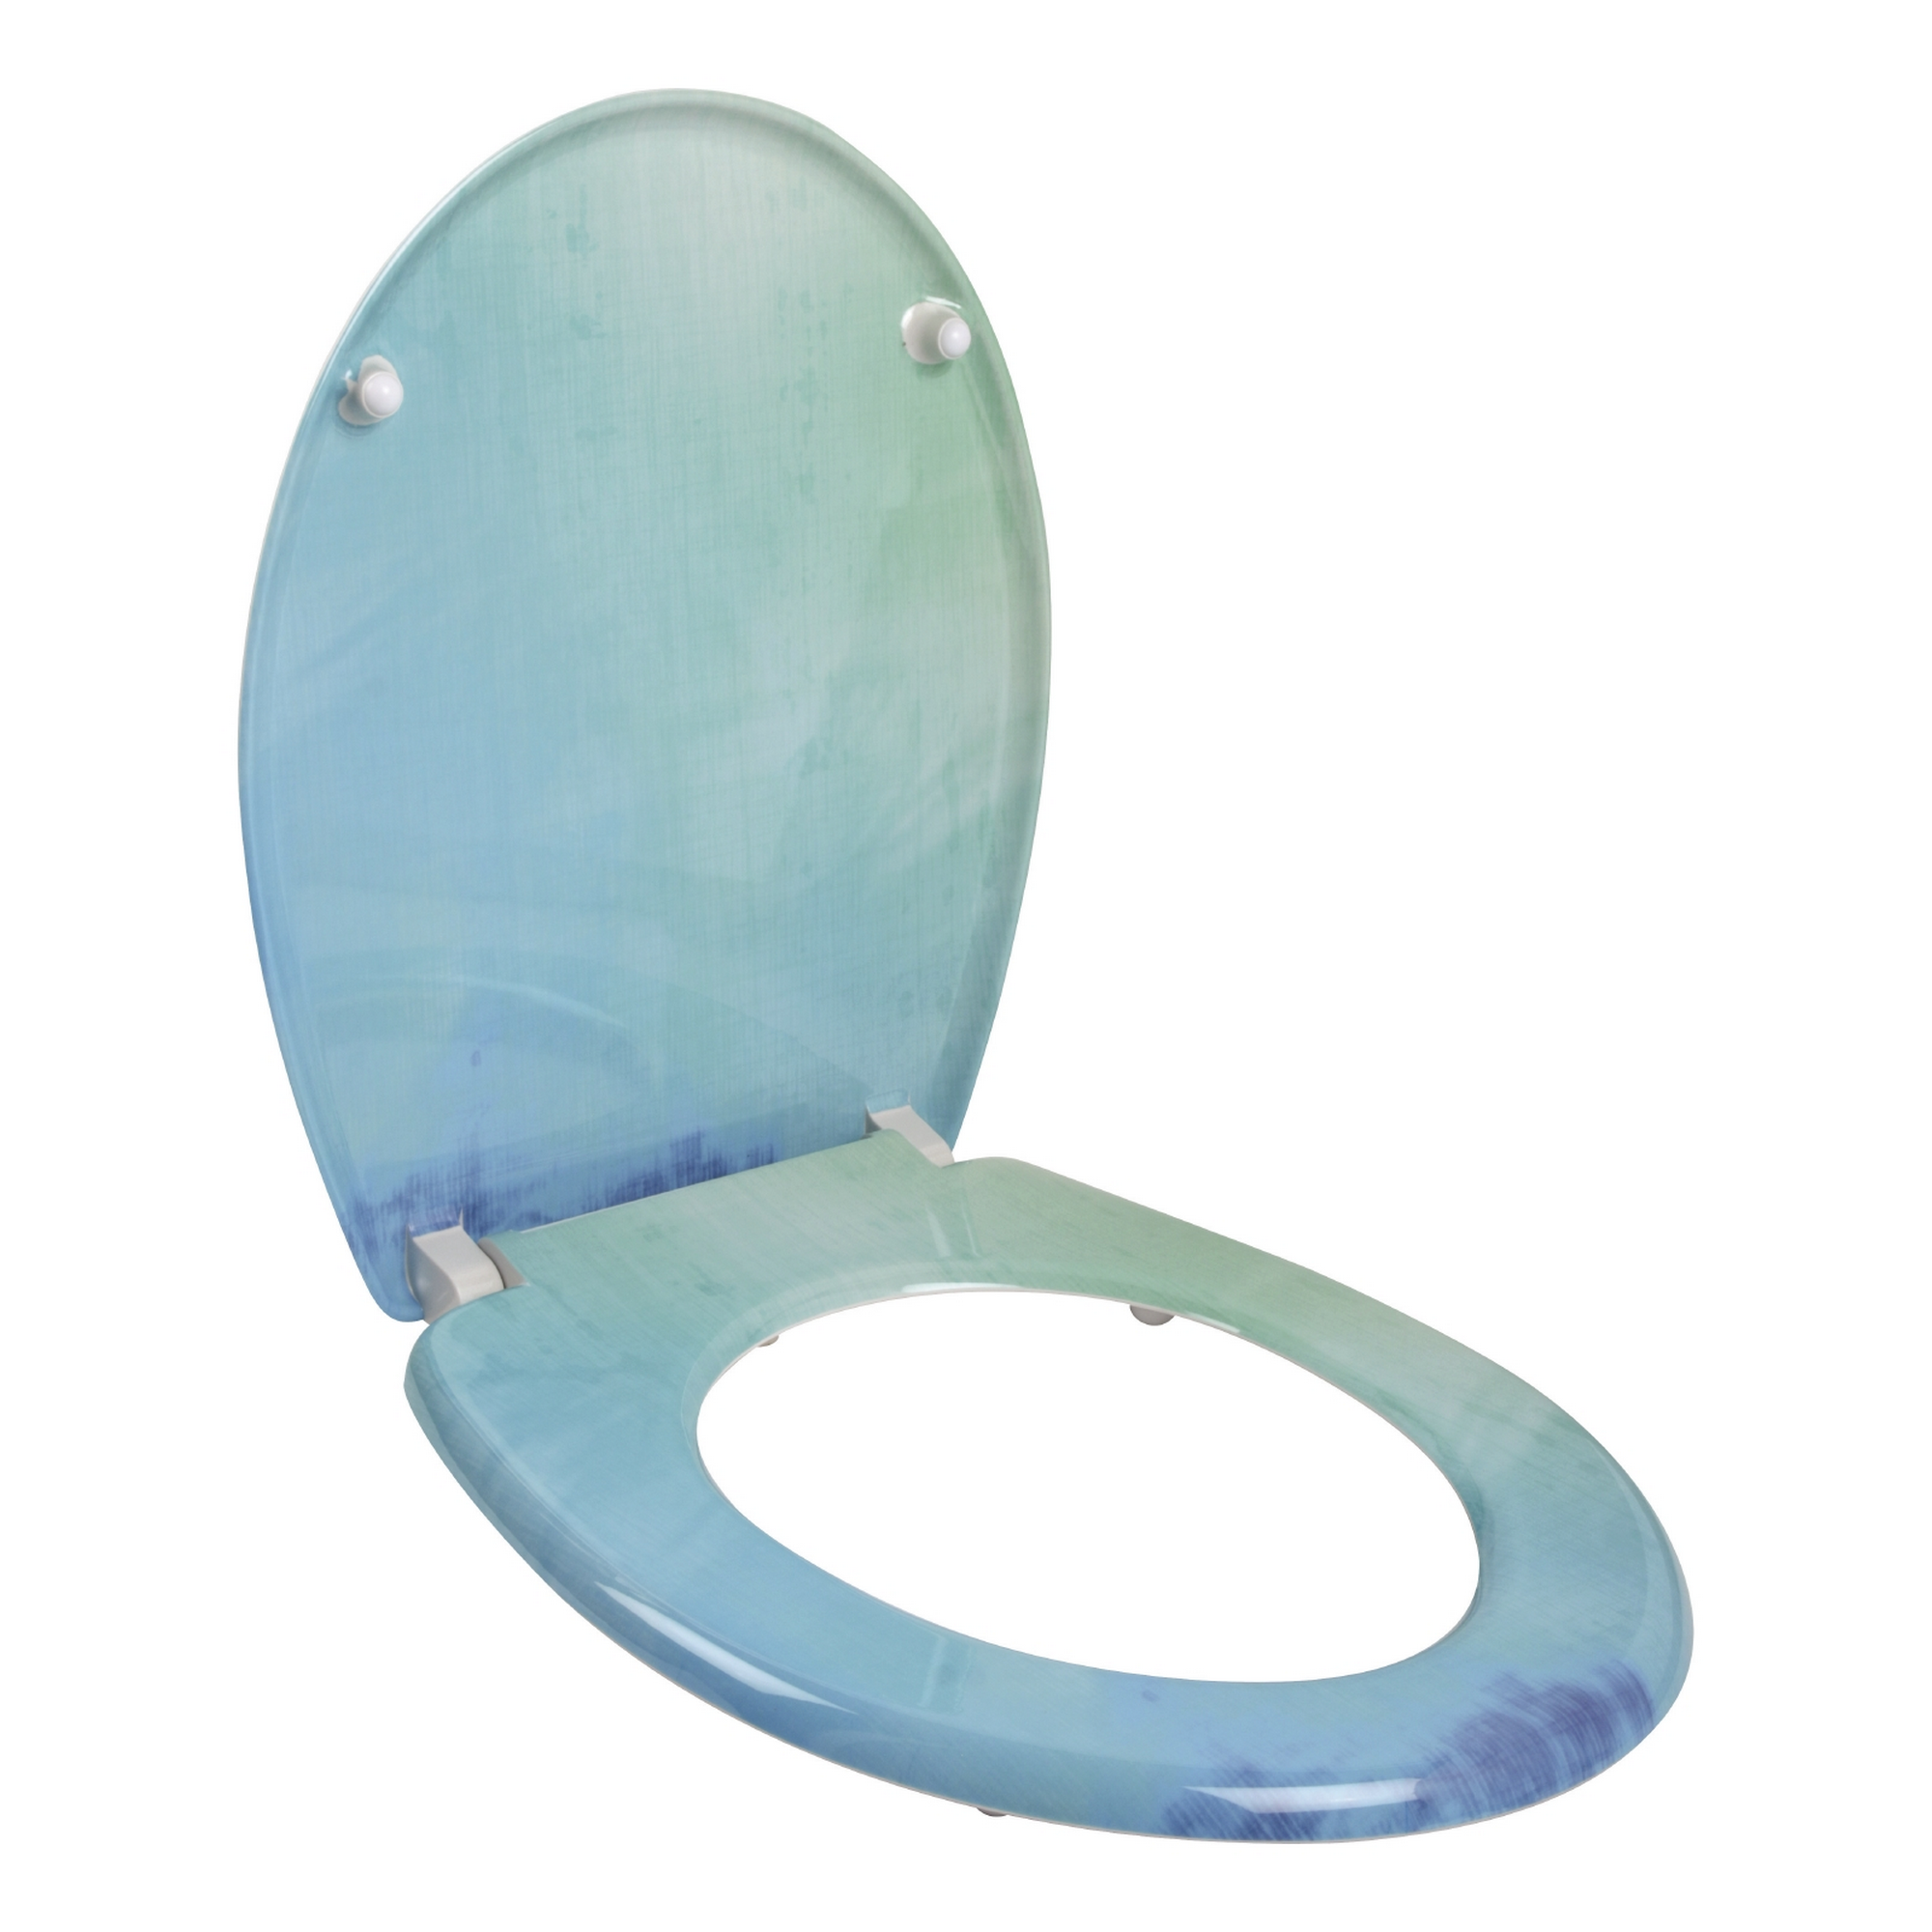 WC-Sitz 'Dekor Farbig' blau Duroplast, mit Absenkautomatik + product picture